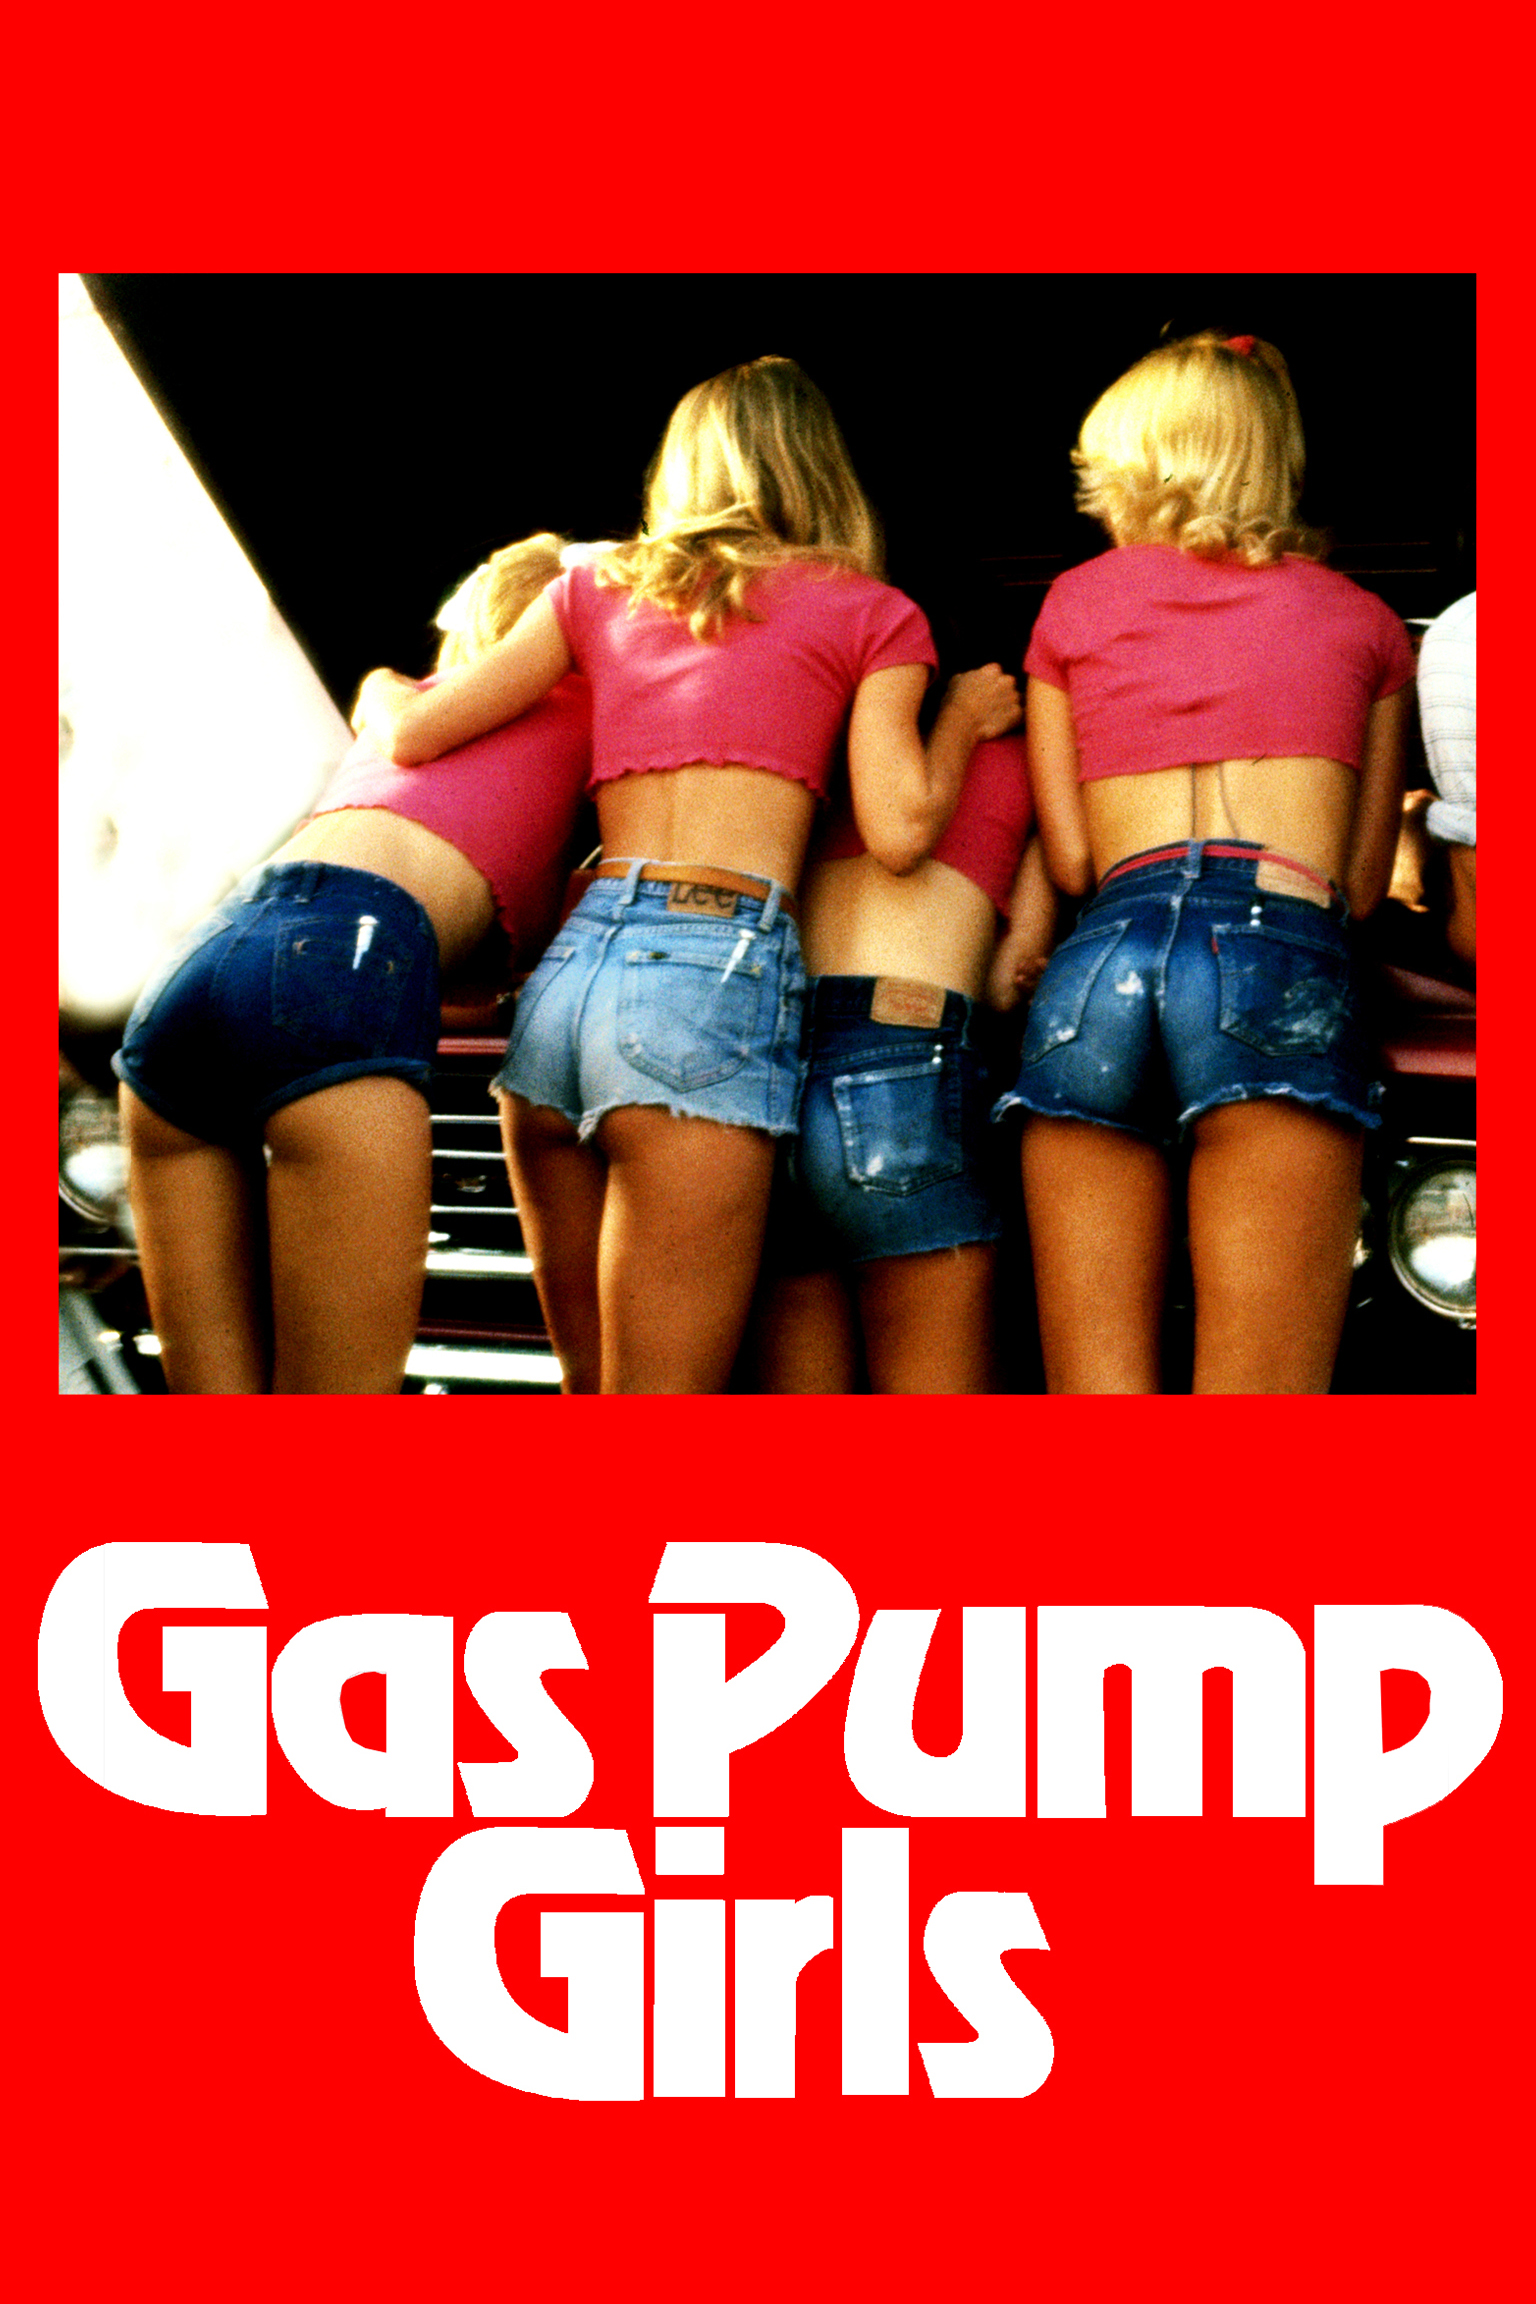 Gas pump girls cast